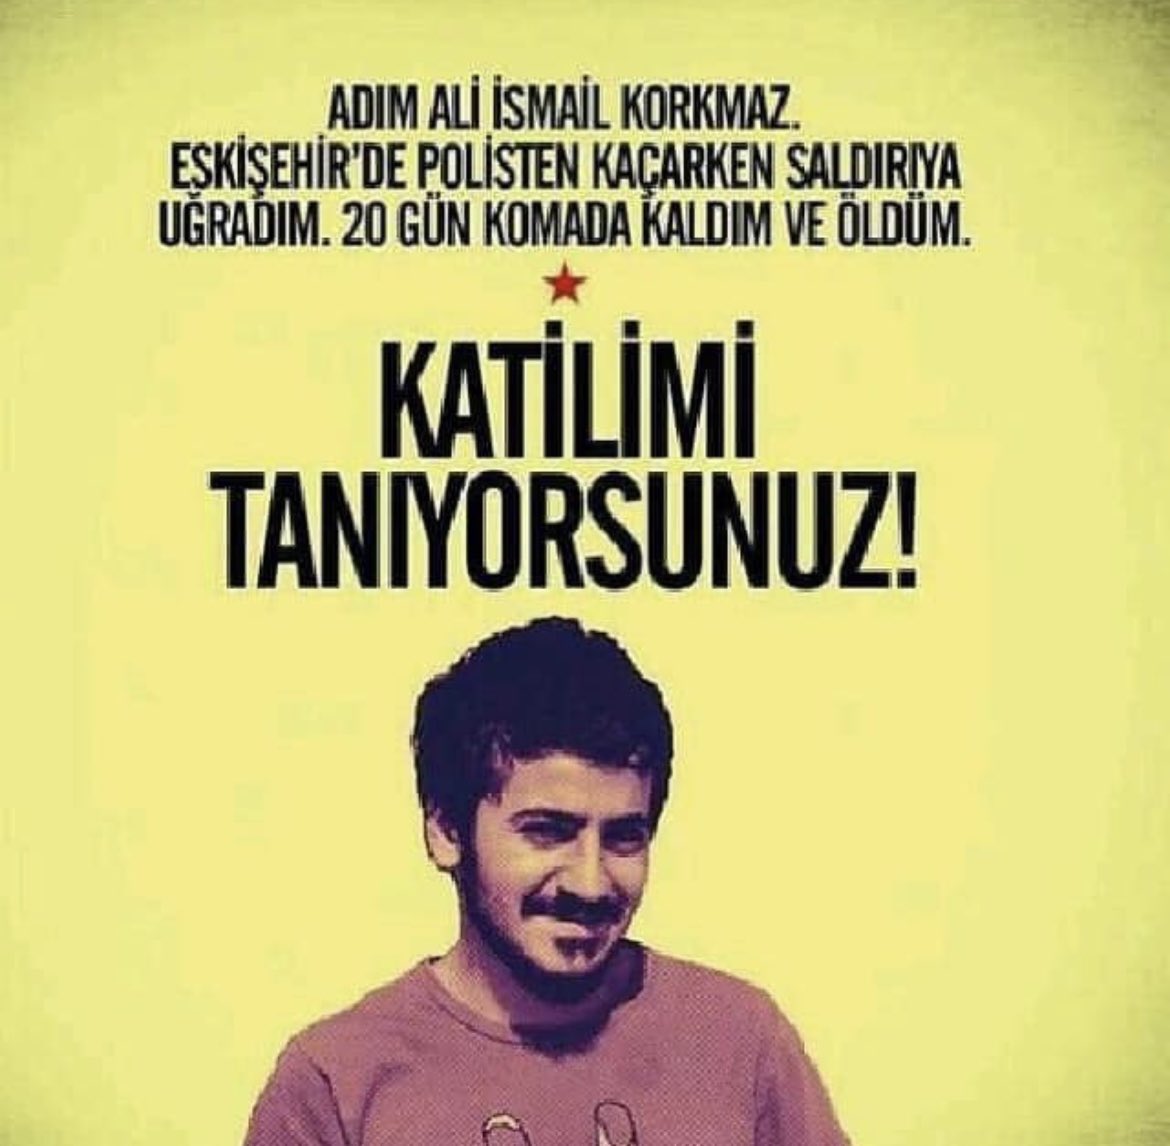 Adım Ali İsmail Korkmaz
Eskişehir'de polisten kaçarken saldırıya uğradım. 20 gün komada kaldım ve öldüm.

Katilimi tanıyorsunuz!!!

#AliİsmailKorkmaz
#Hep19Yaşında